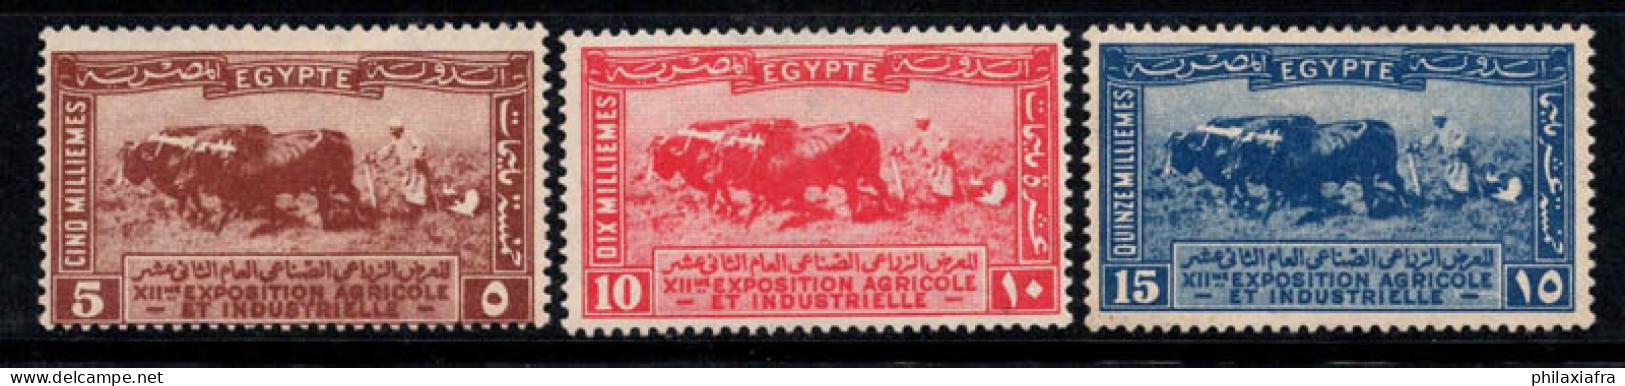 Égypte 1925 Mi. 97-99 Neuf * MH 80% Agriculture, Animaux - Neufs